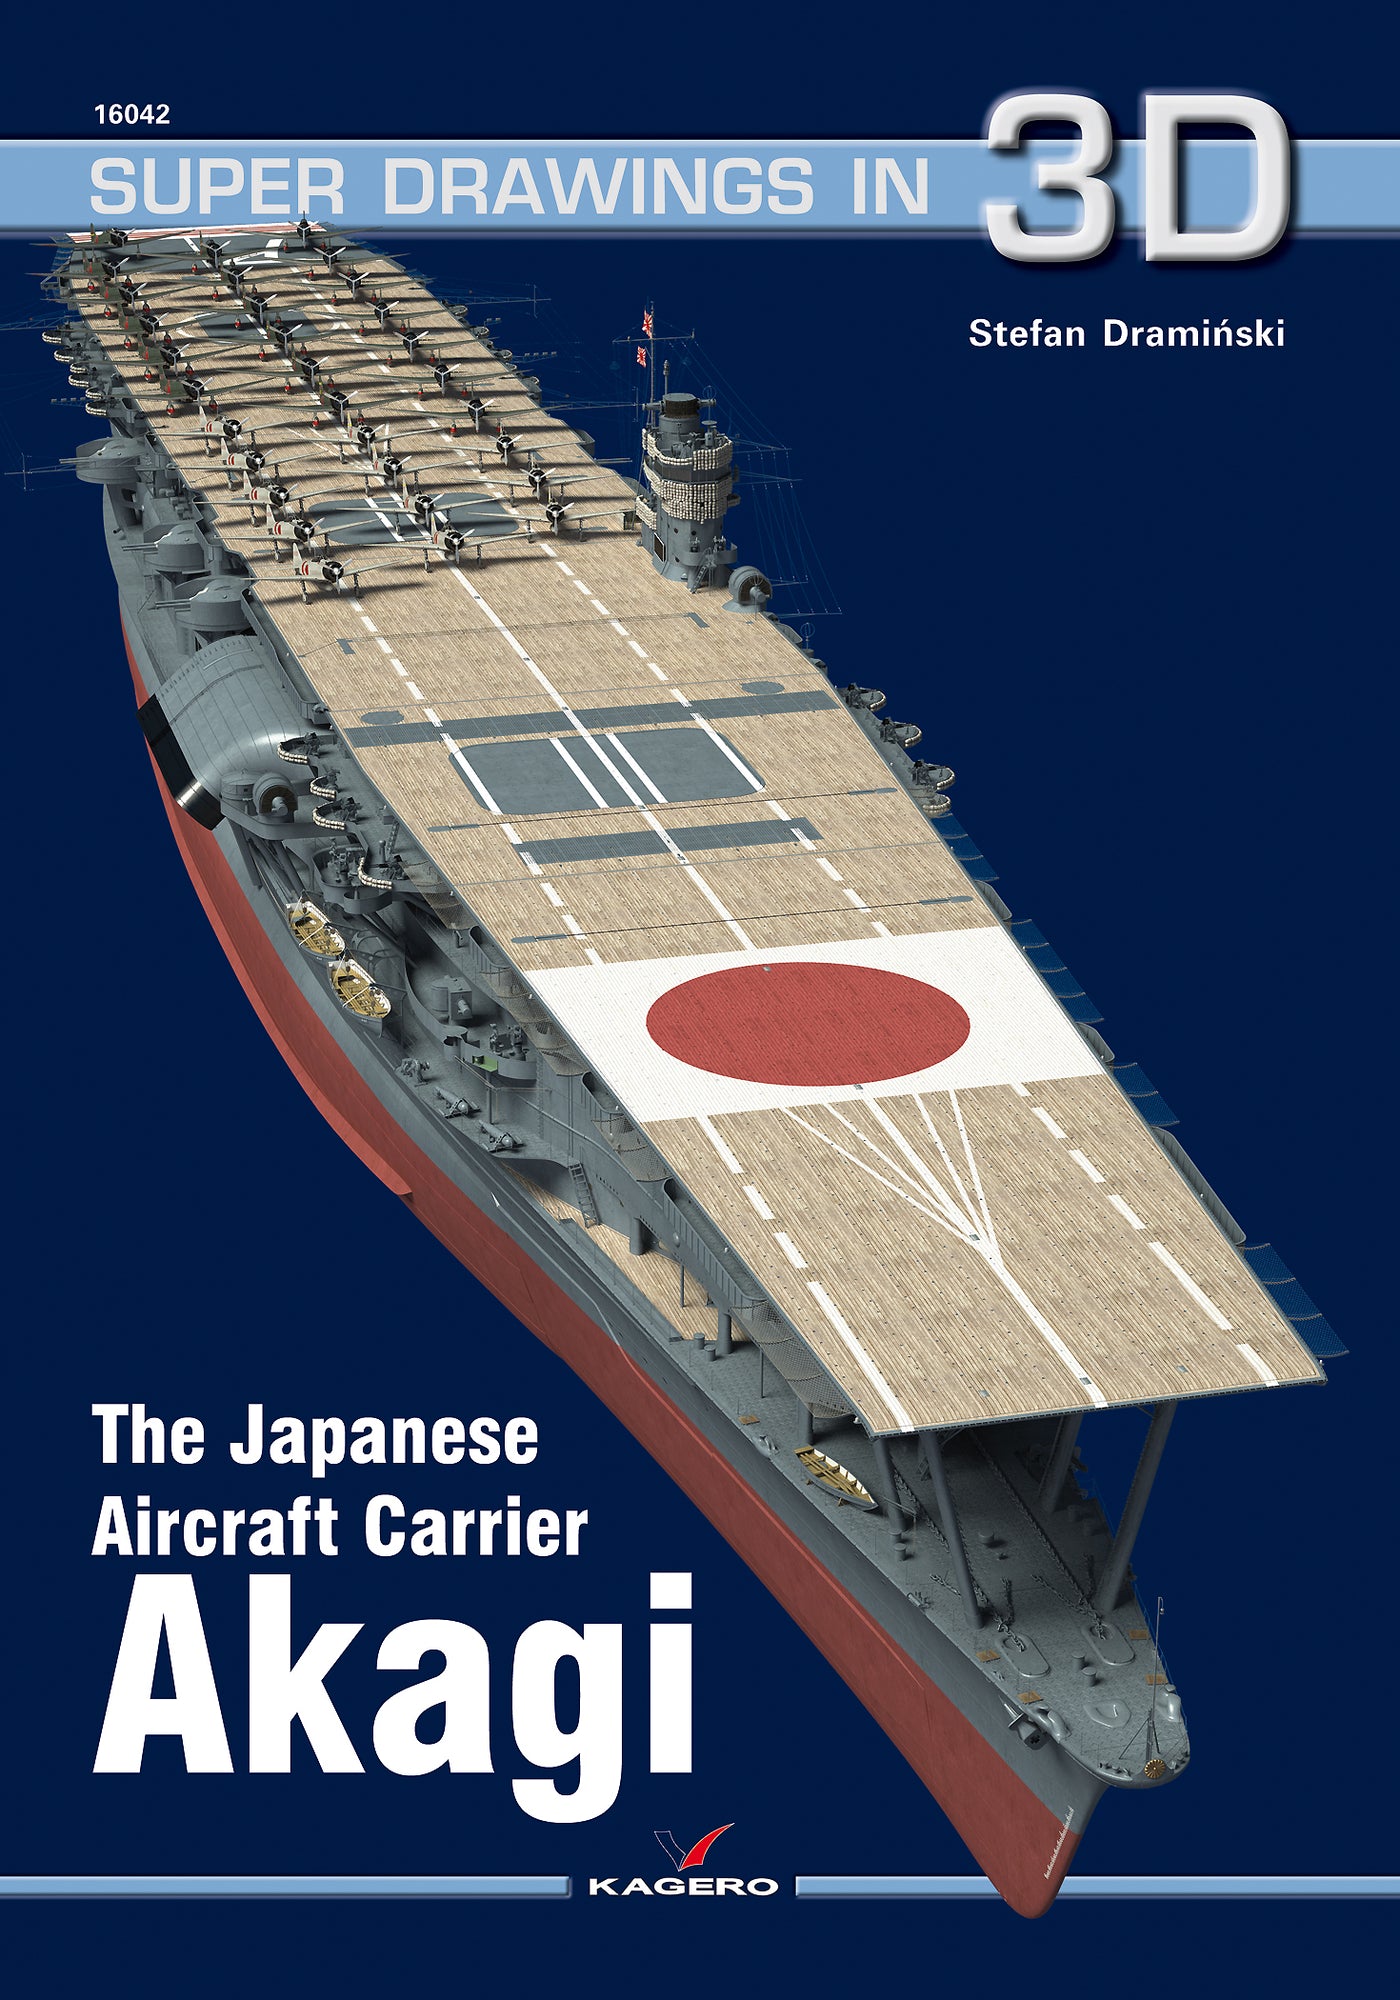 The Japanese Aircraft Carrier Akagi